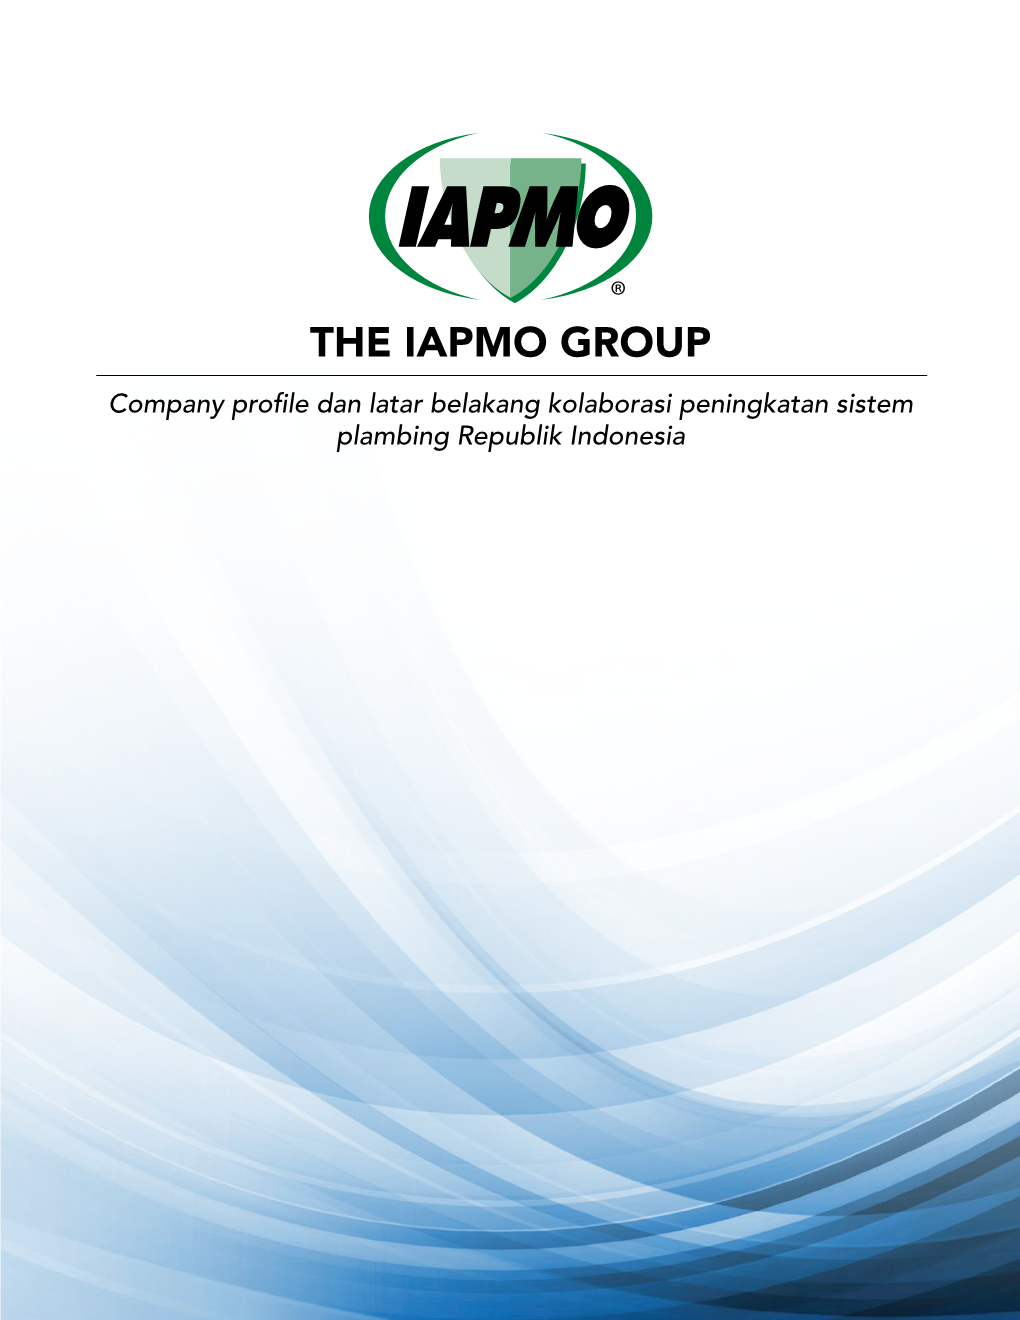 The Iapmo Group